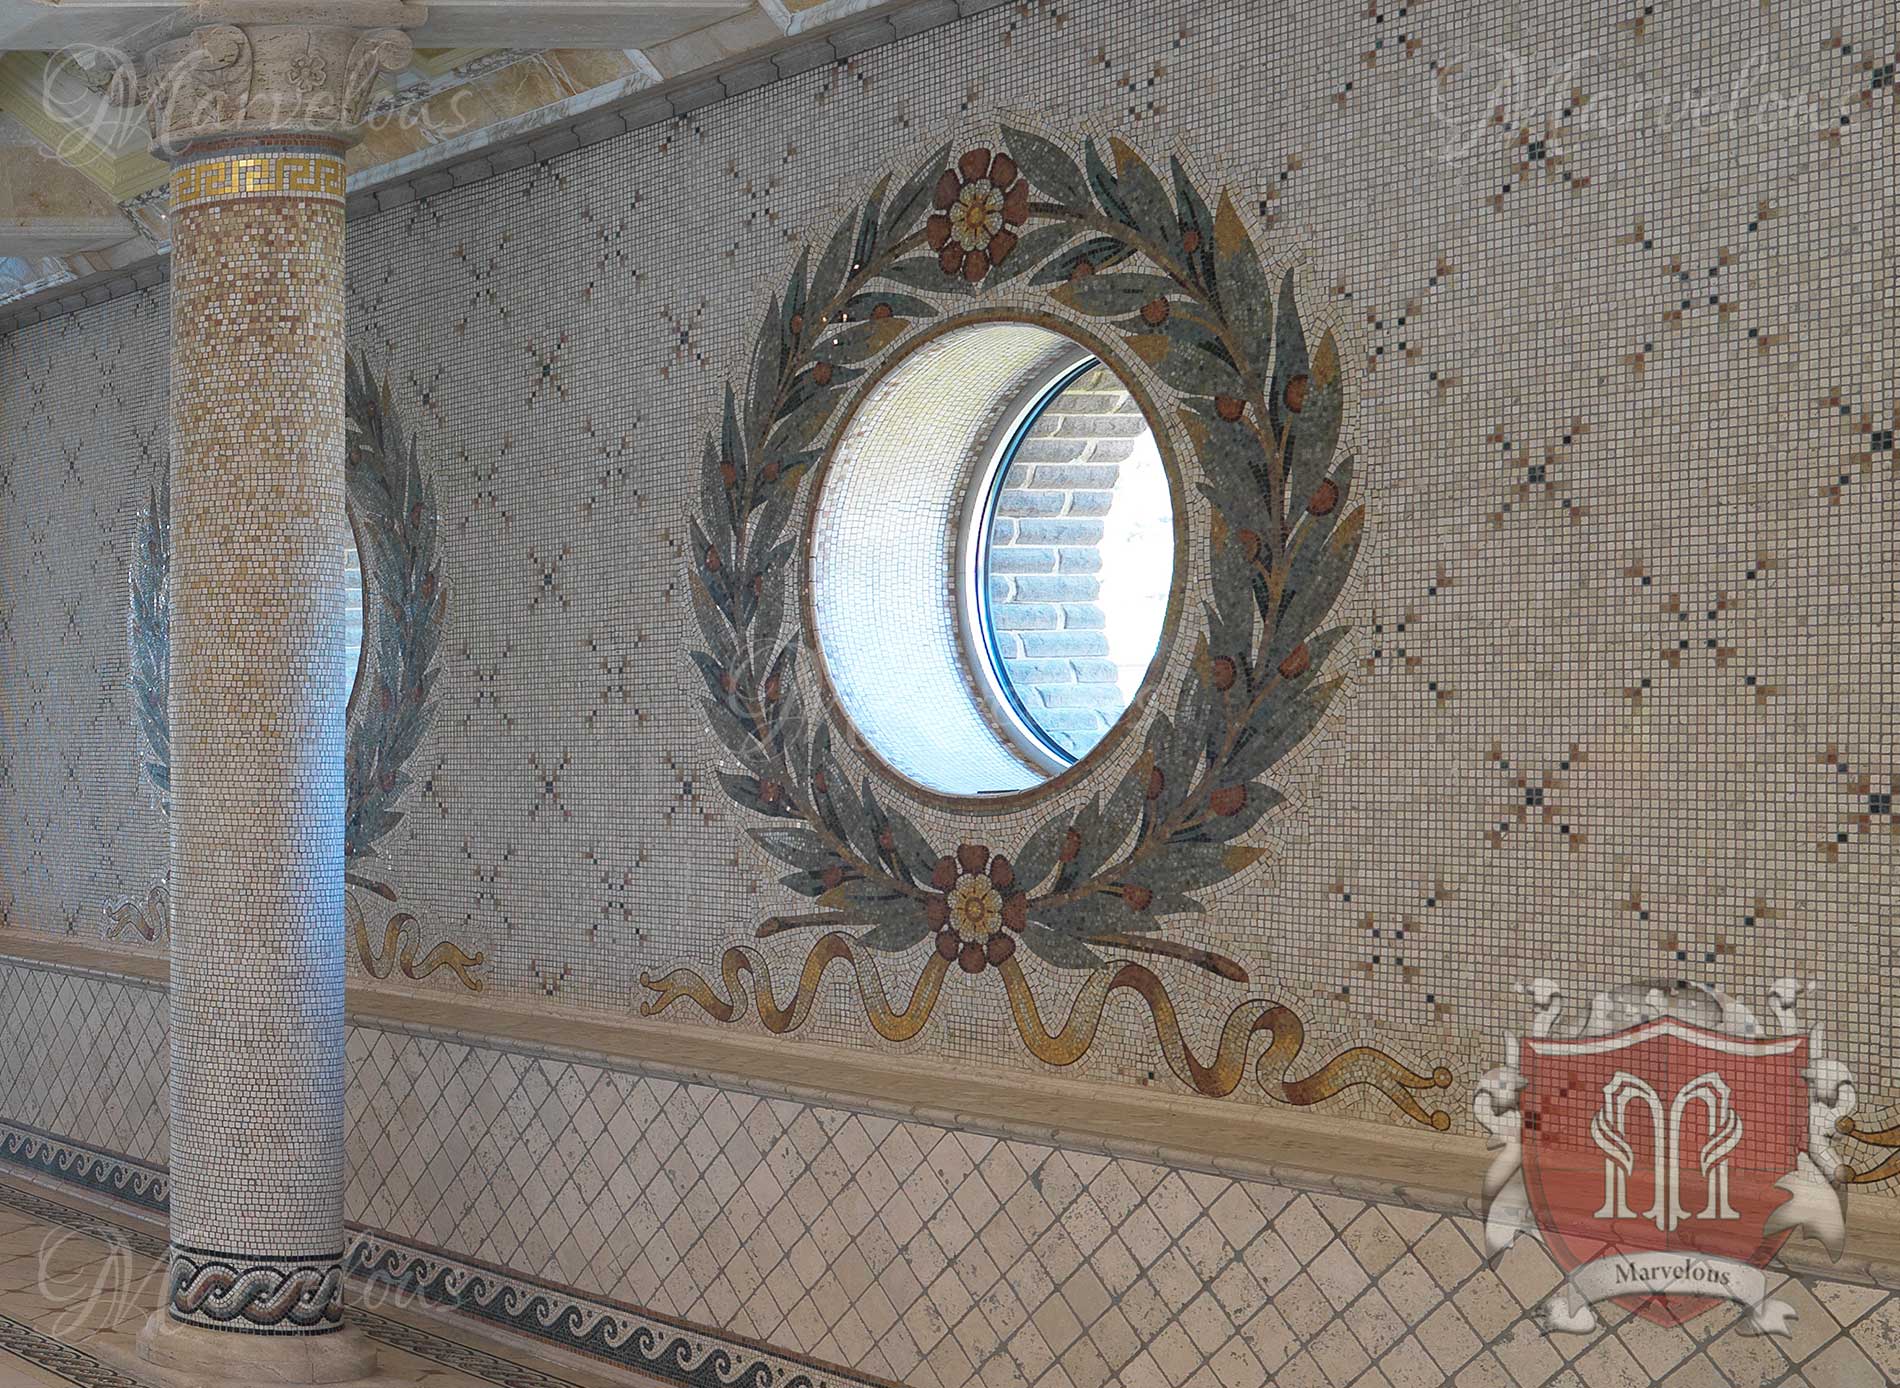 Marble Wall Mosaic: Acqua Vergine